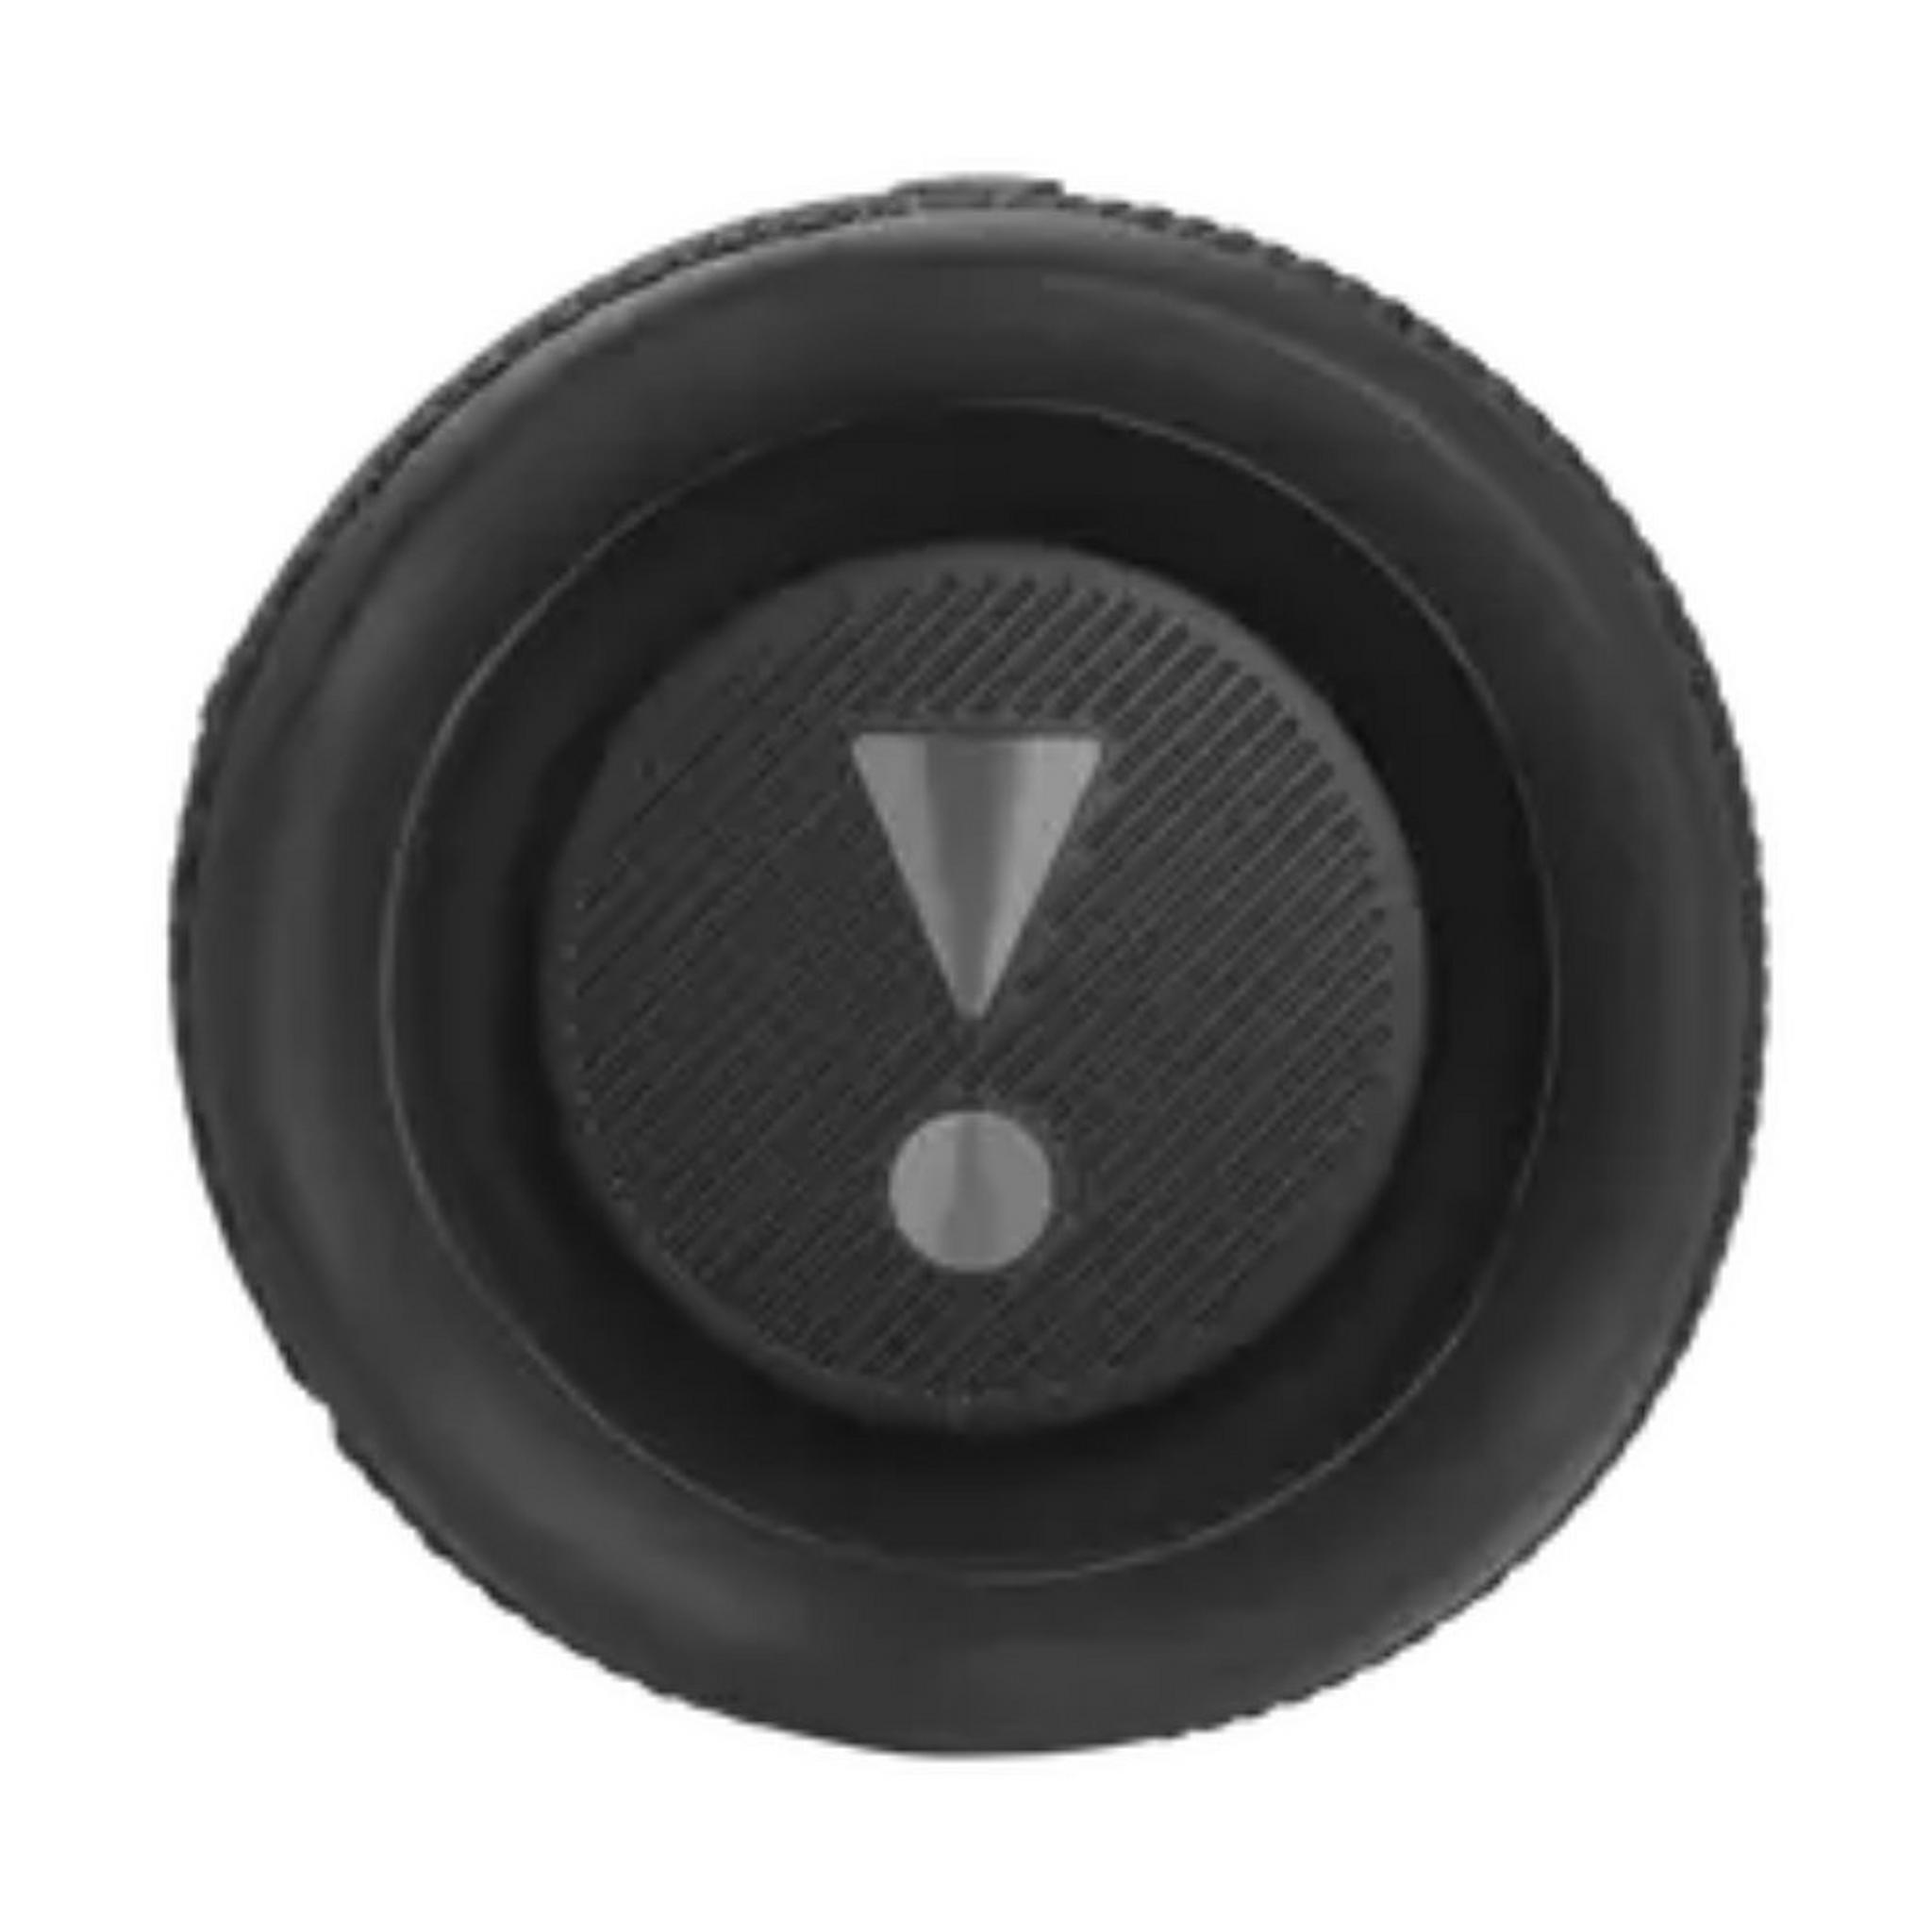 JBL Flip 6 Wireless Waterproof Speaker - Black